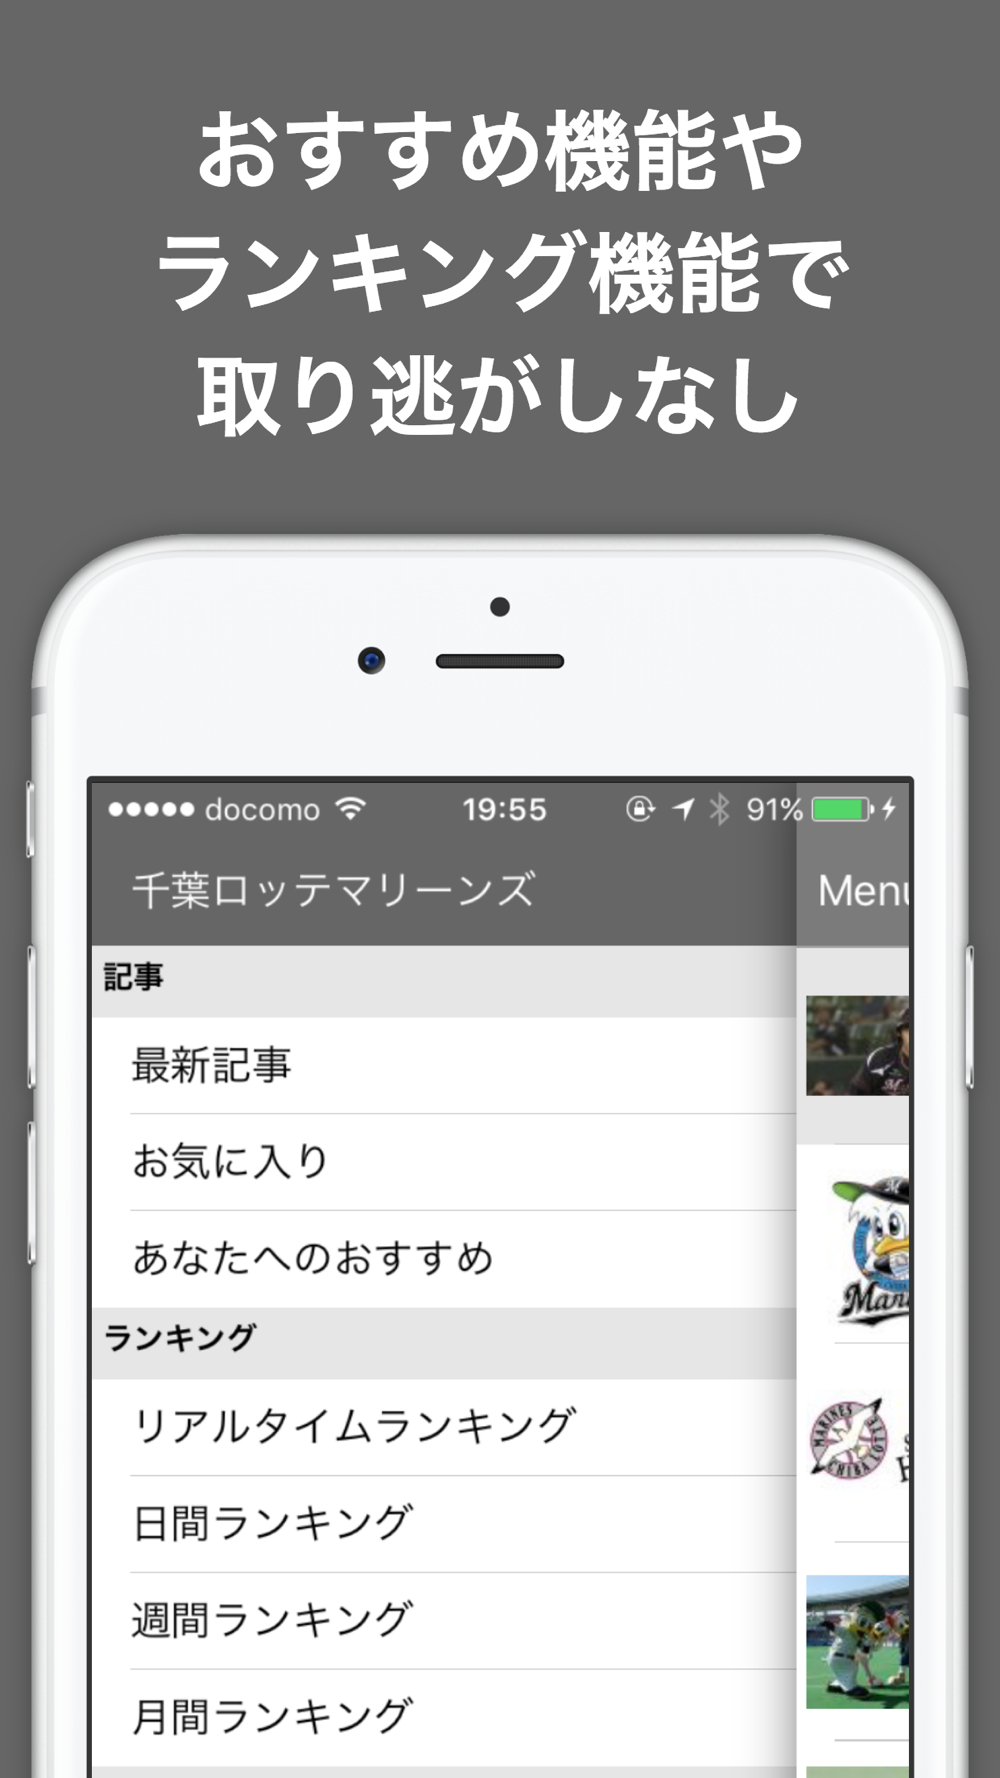 ブログまとめニュース速報 For 千葉ロッテマリーンズロッテ Free Download App For Iphone Steprimo Com